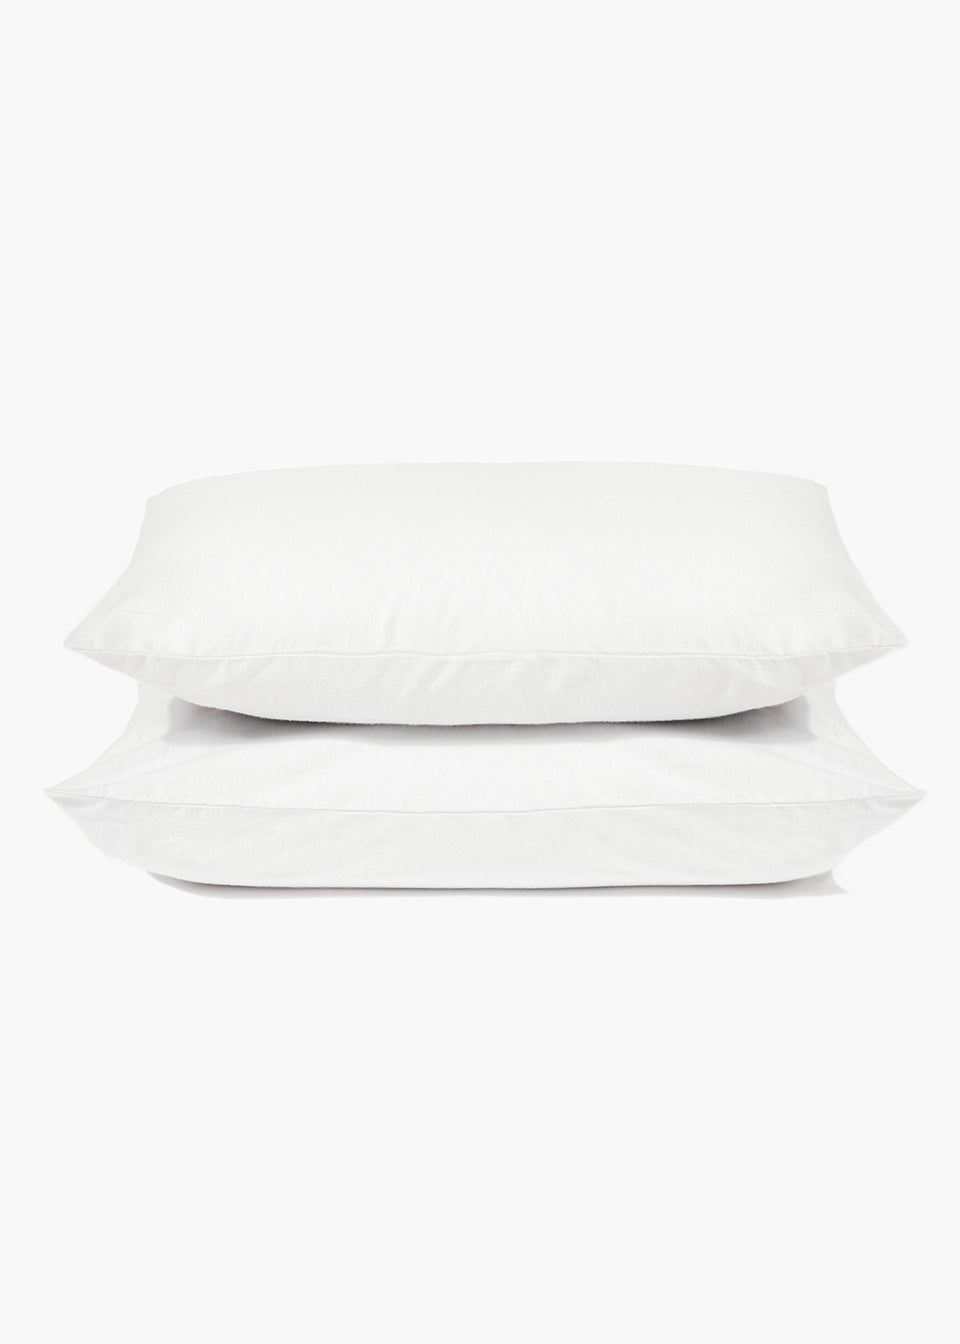 White Polycotton Housewife Pillowcase Pair (144 Thread Count)